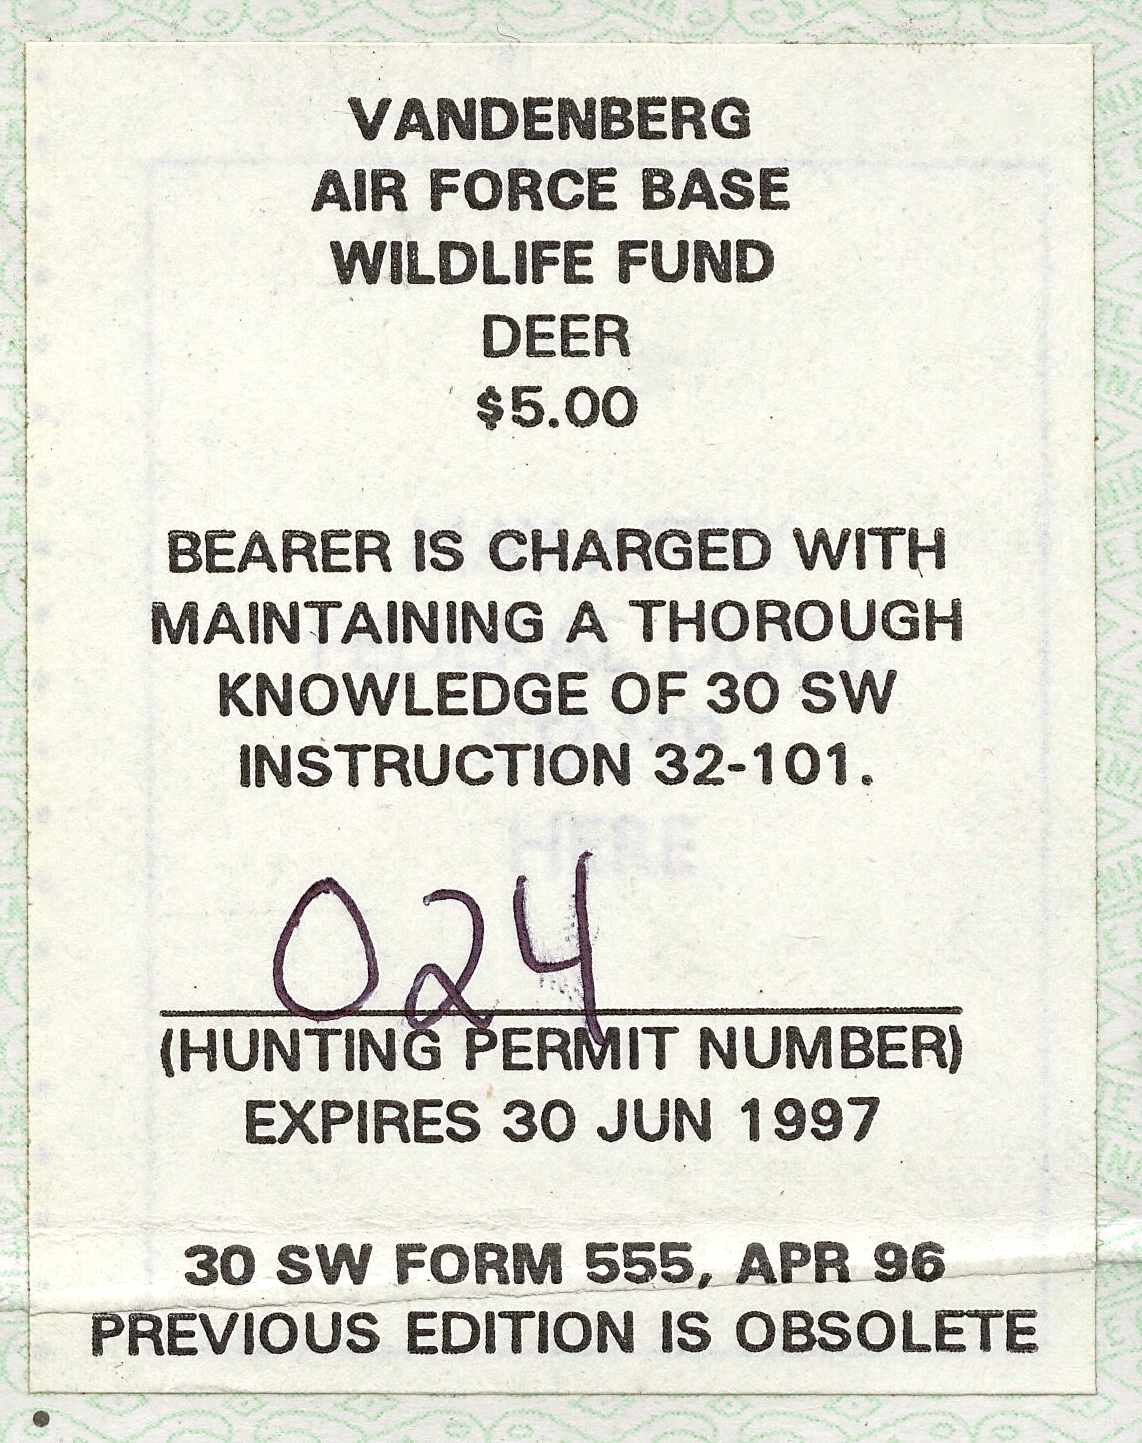 1996-97 VAFB Deer